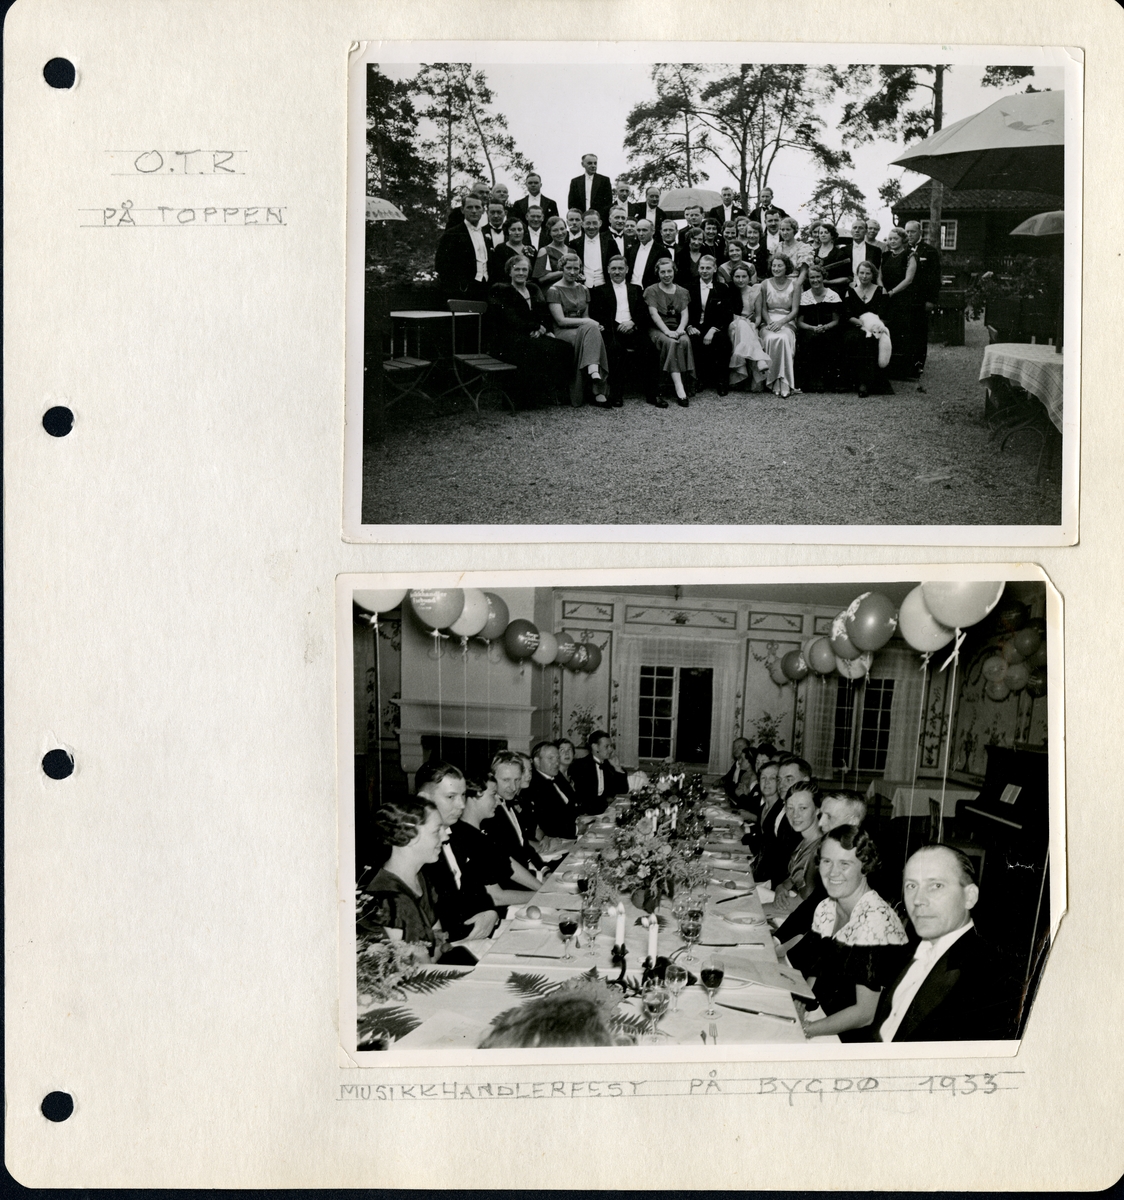 Fra familiealbum. Musikkhandlerfest på Bygdøy i 1933, og gruppen er samlet rundt festbordet.